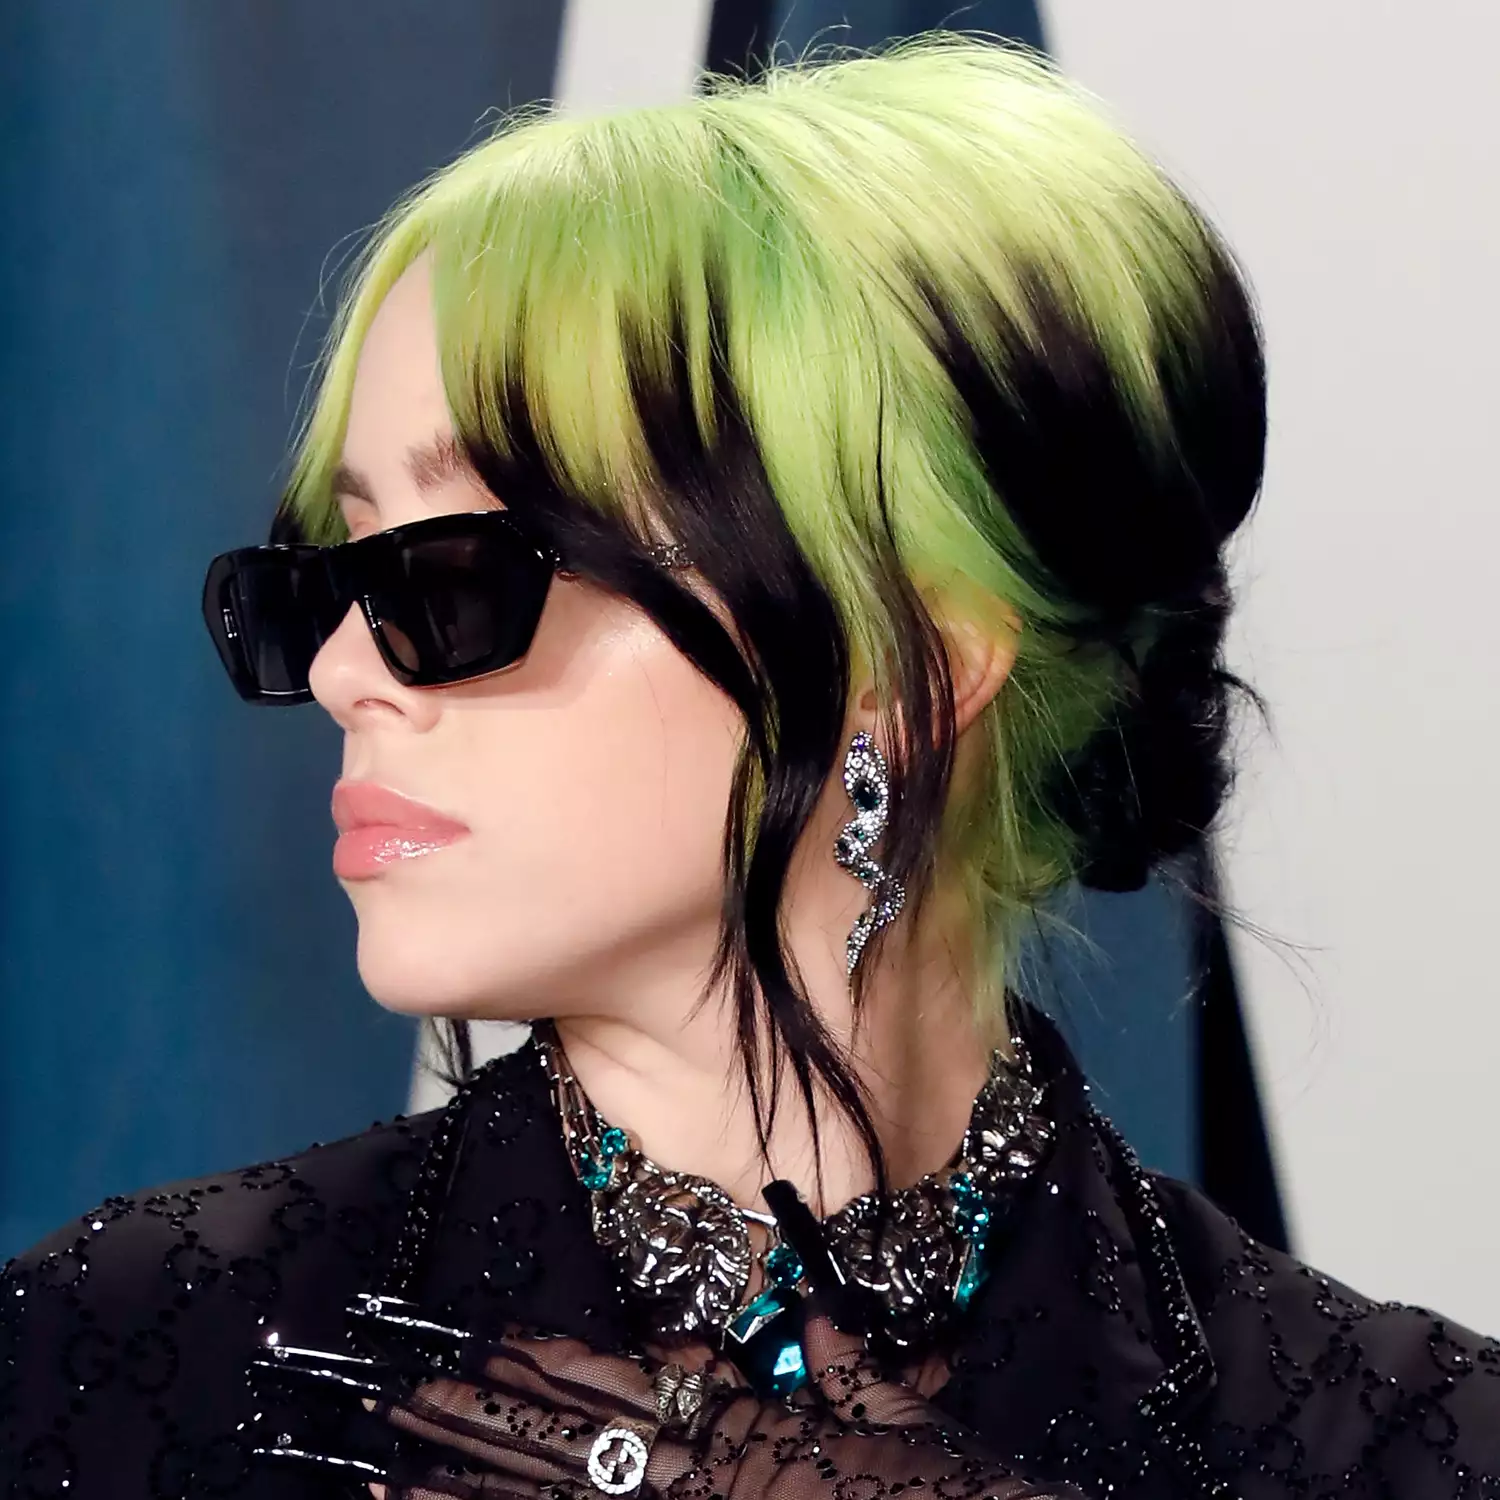 Billie Eilish aux cheveux verts et noirs